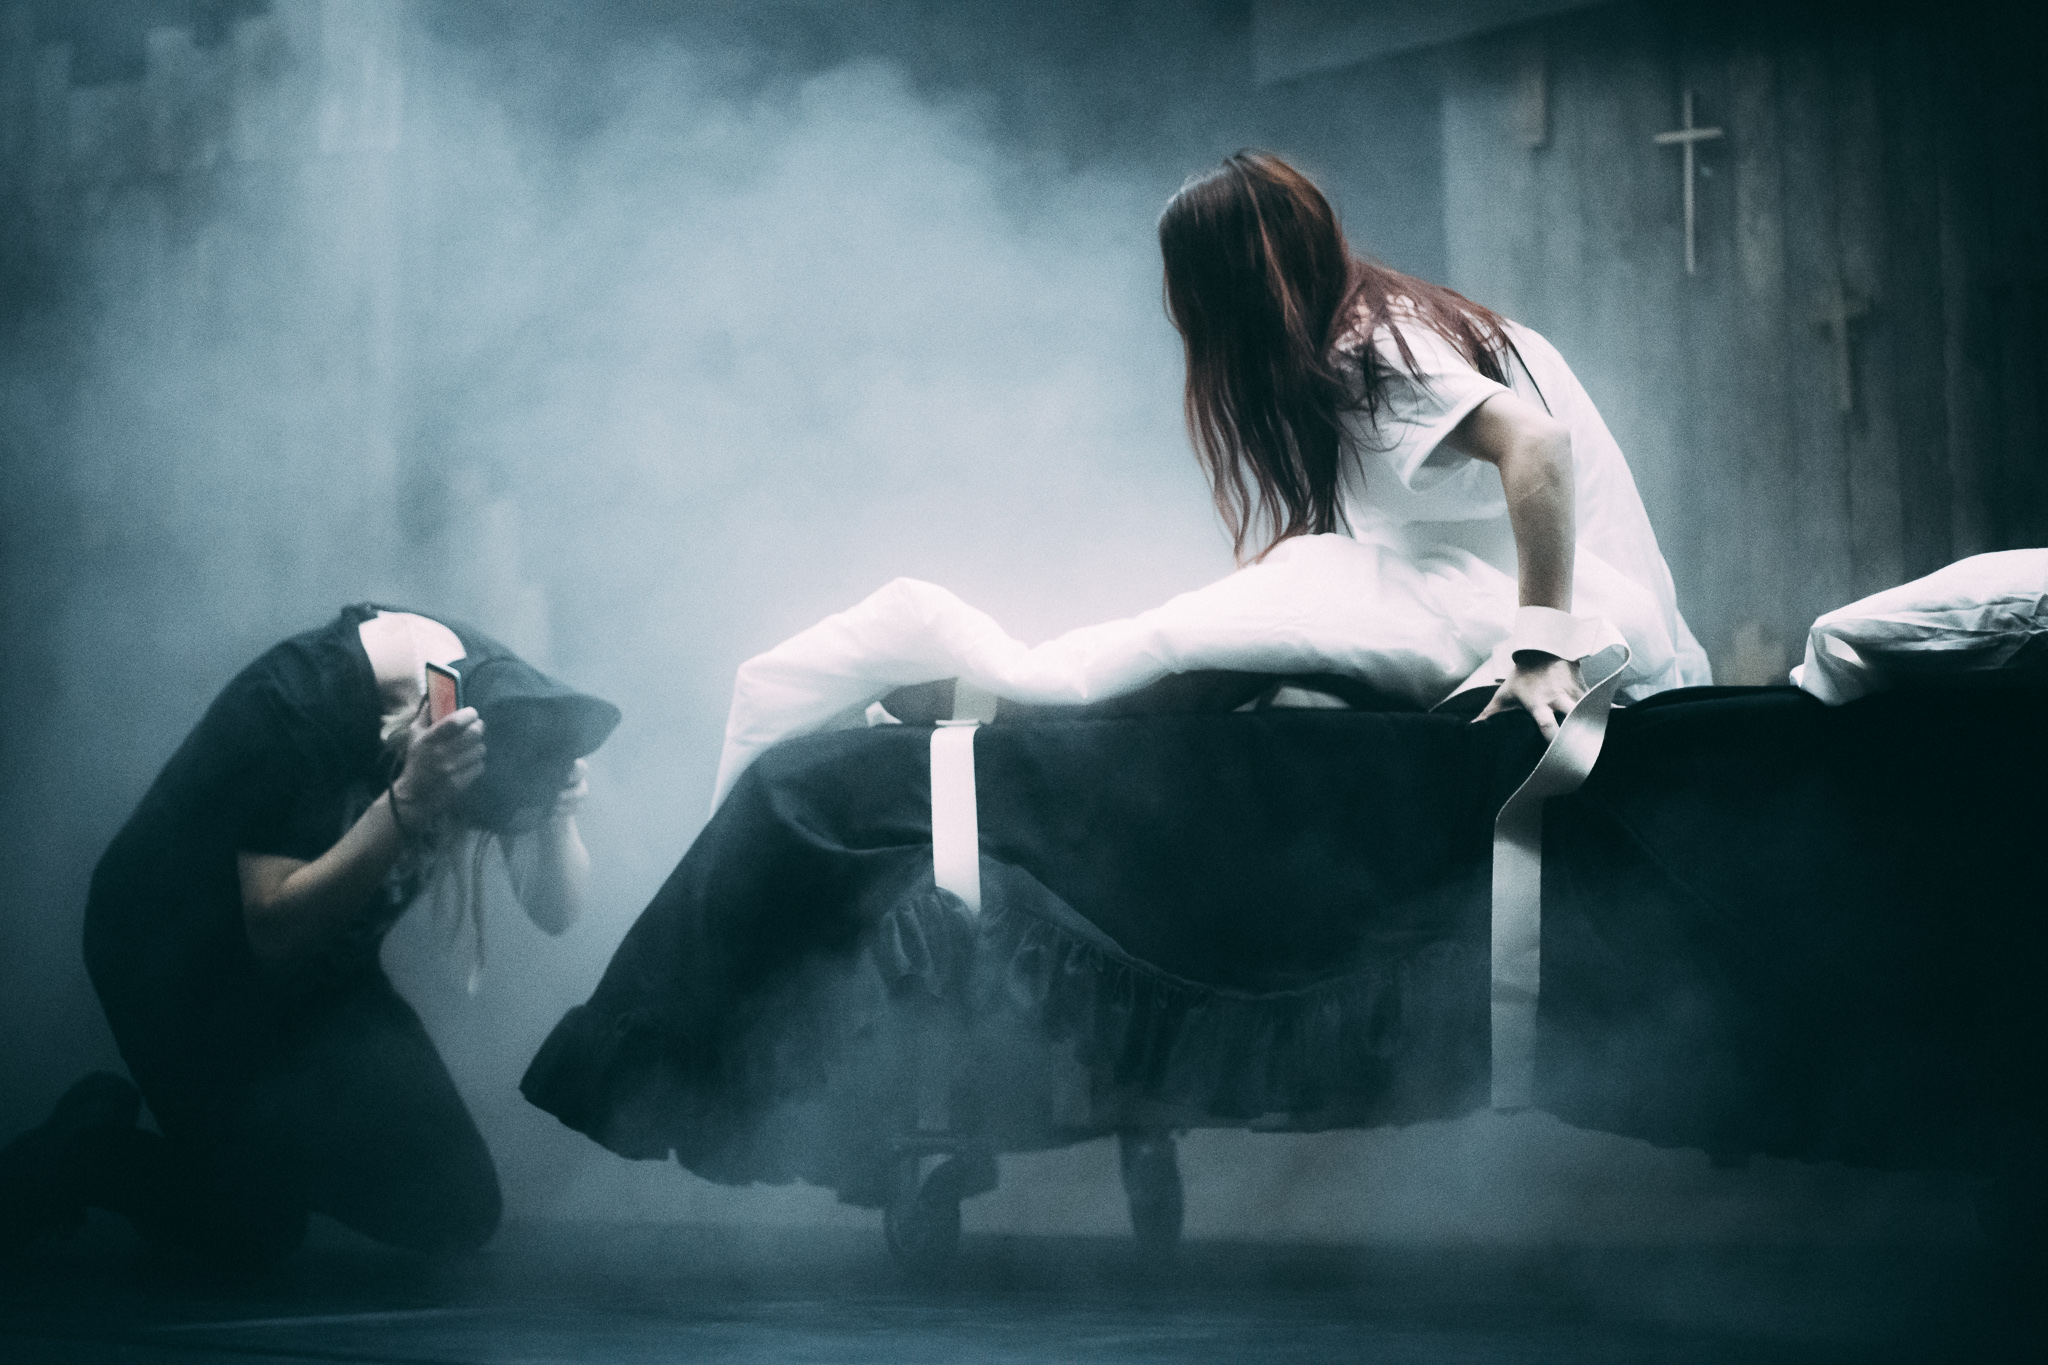 "Devil's Exorcist" 2020, Bühnenbild und Kostümbild von Mara Lena Schönborn, Foto: Nico Moser